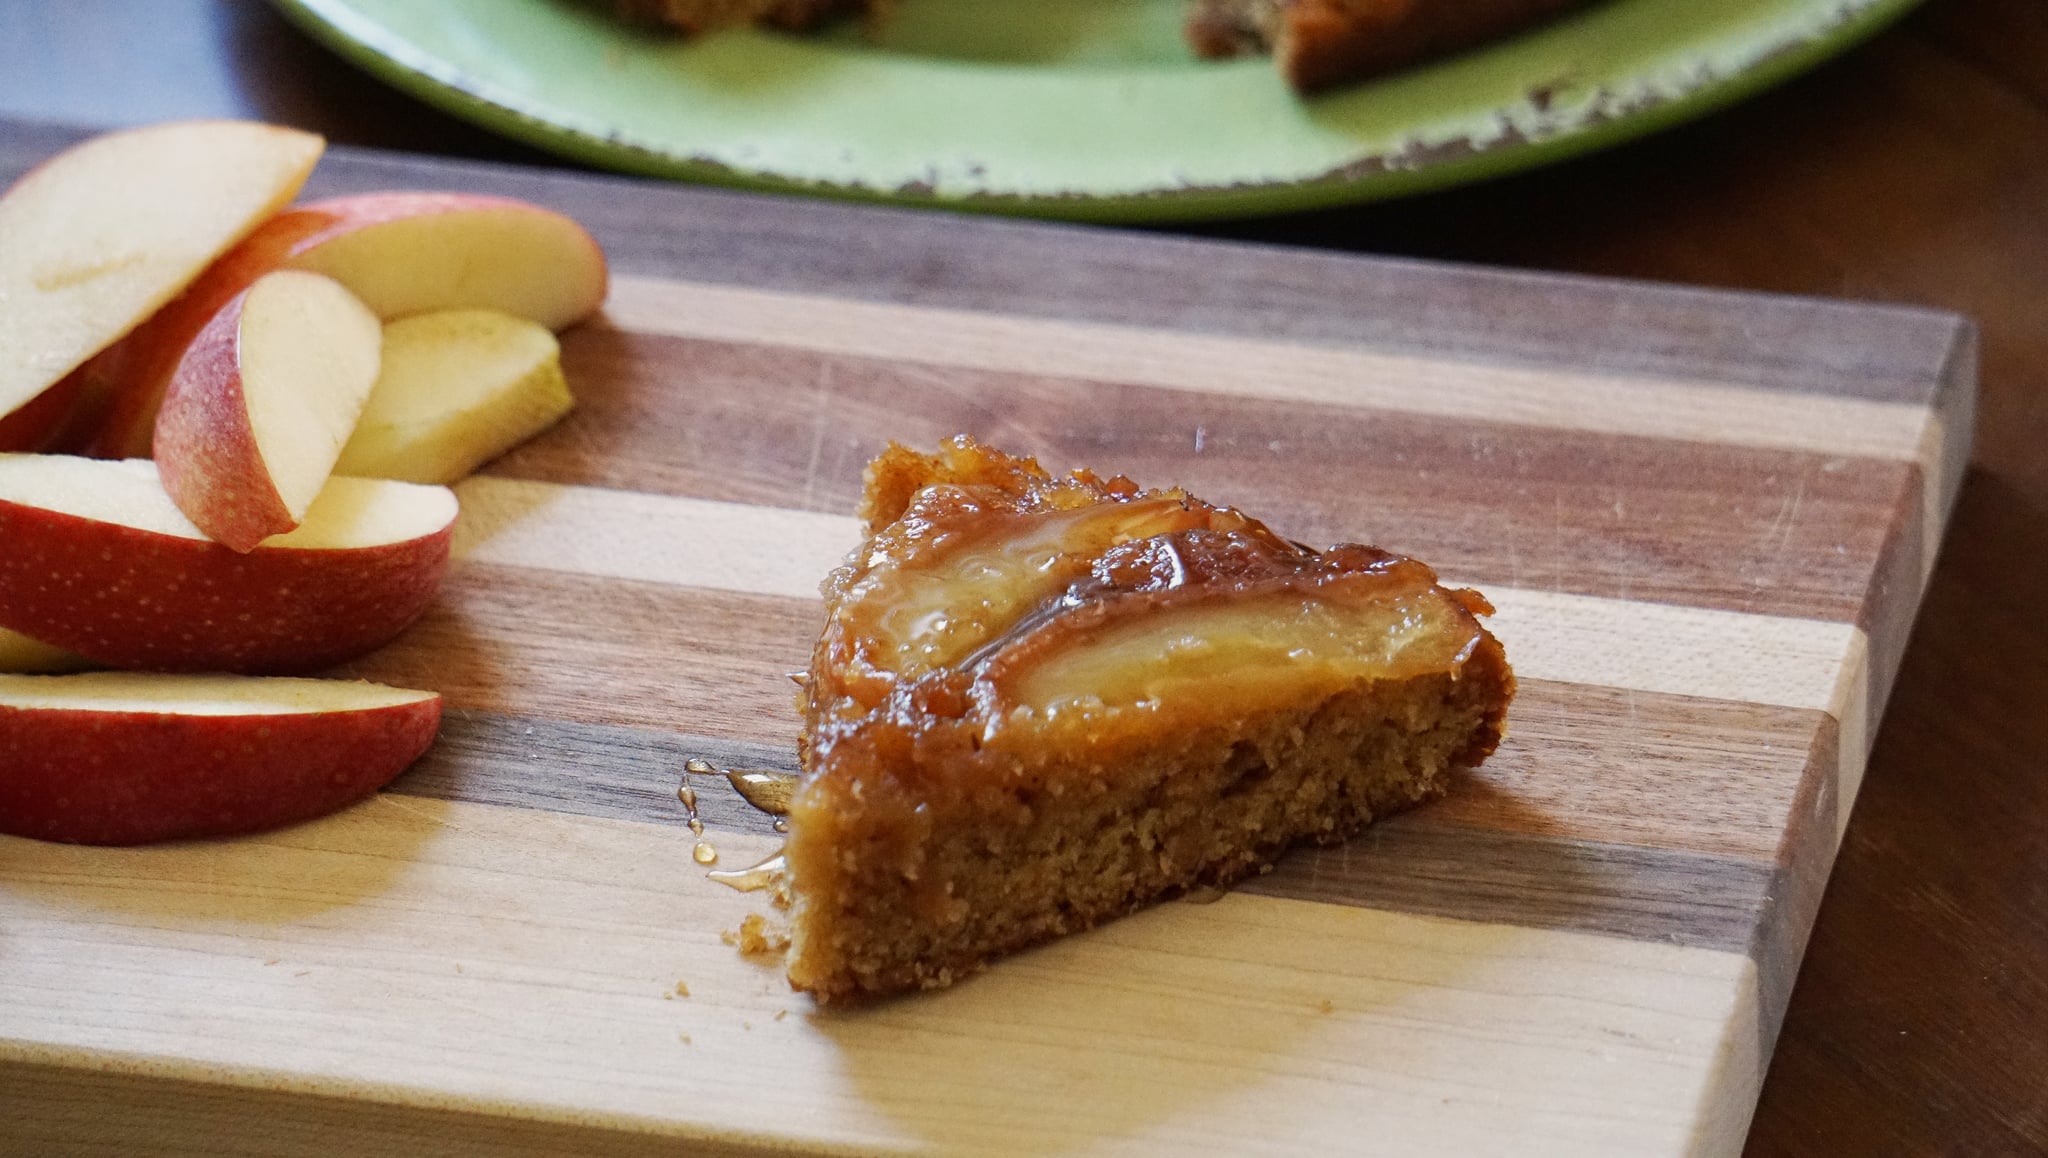 apple honey upside down cake for rosh hashanah dessert: slice